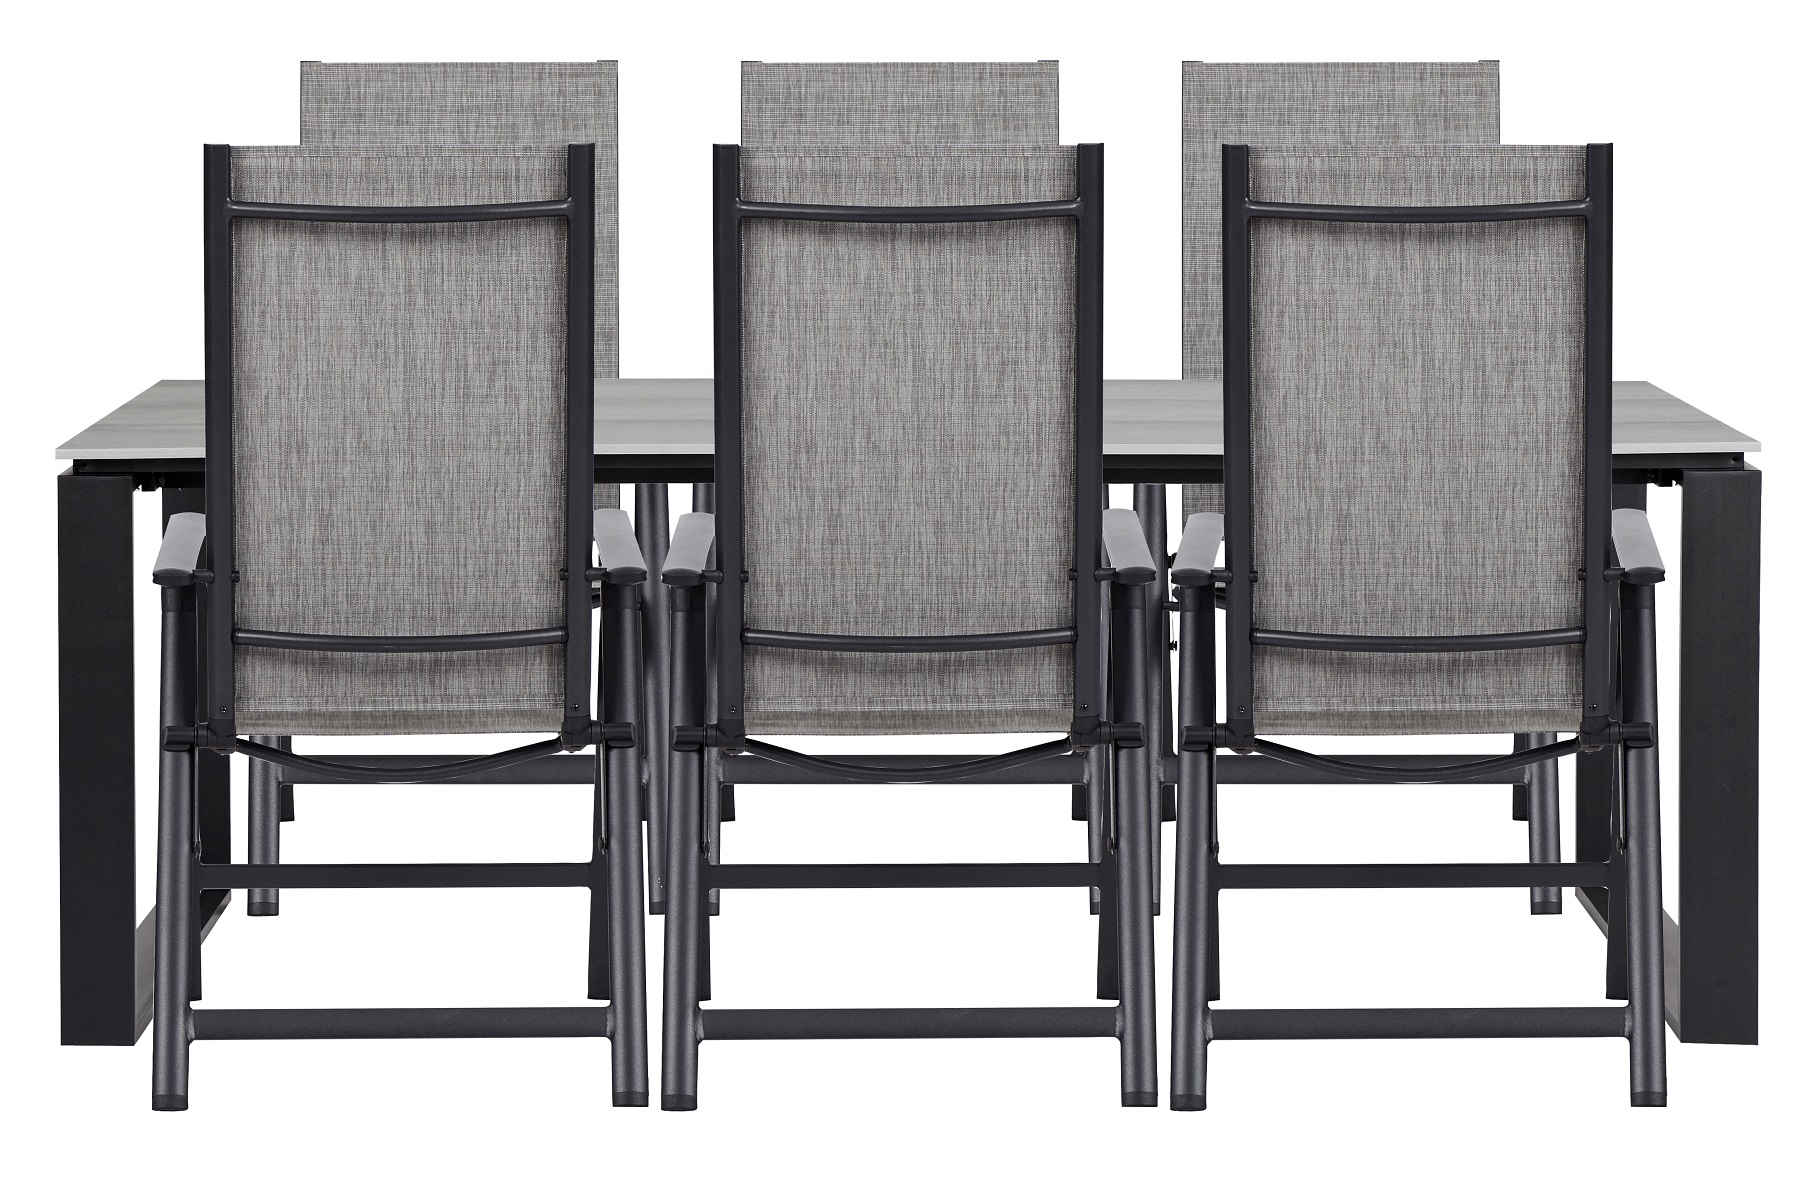 Living Outdoor - Tunoe Garden Table 210 x 100 cm - Aluminium/Polywood with 6 pcs. Omoe Position Garden Chairs- Textile - Black /Grey - Bundle